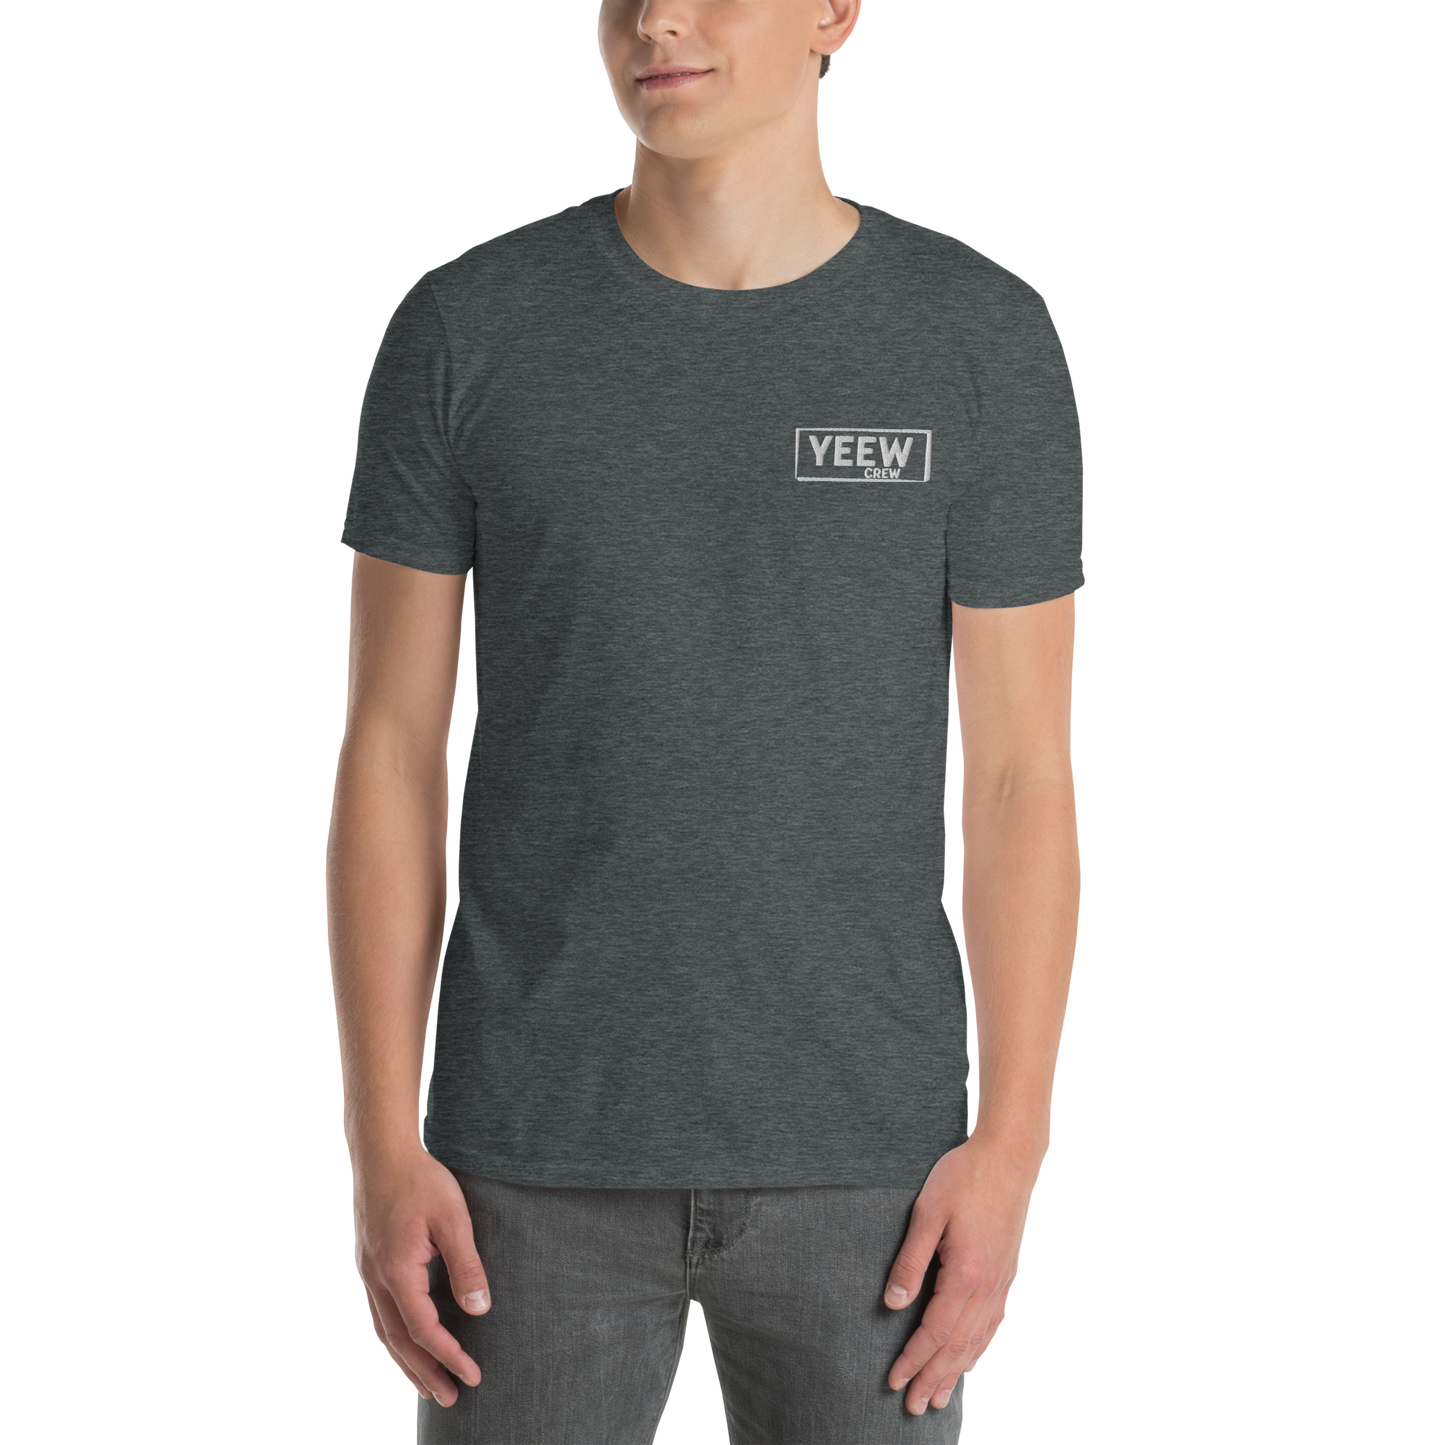 Surfer Steve Short-Sleeve Unisex T-Shirt